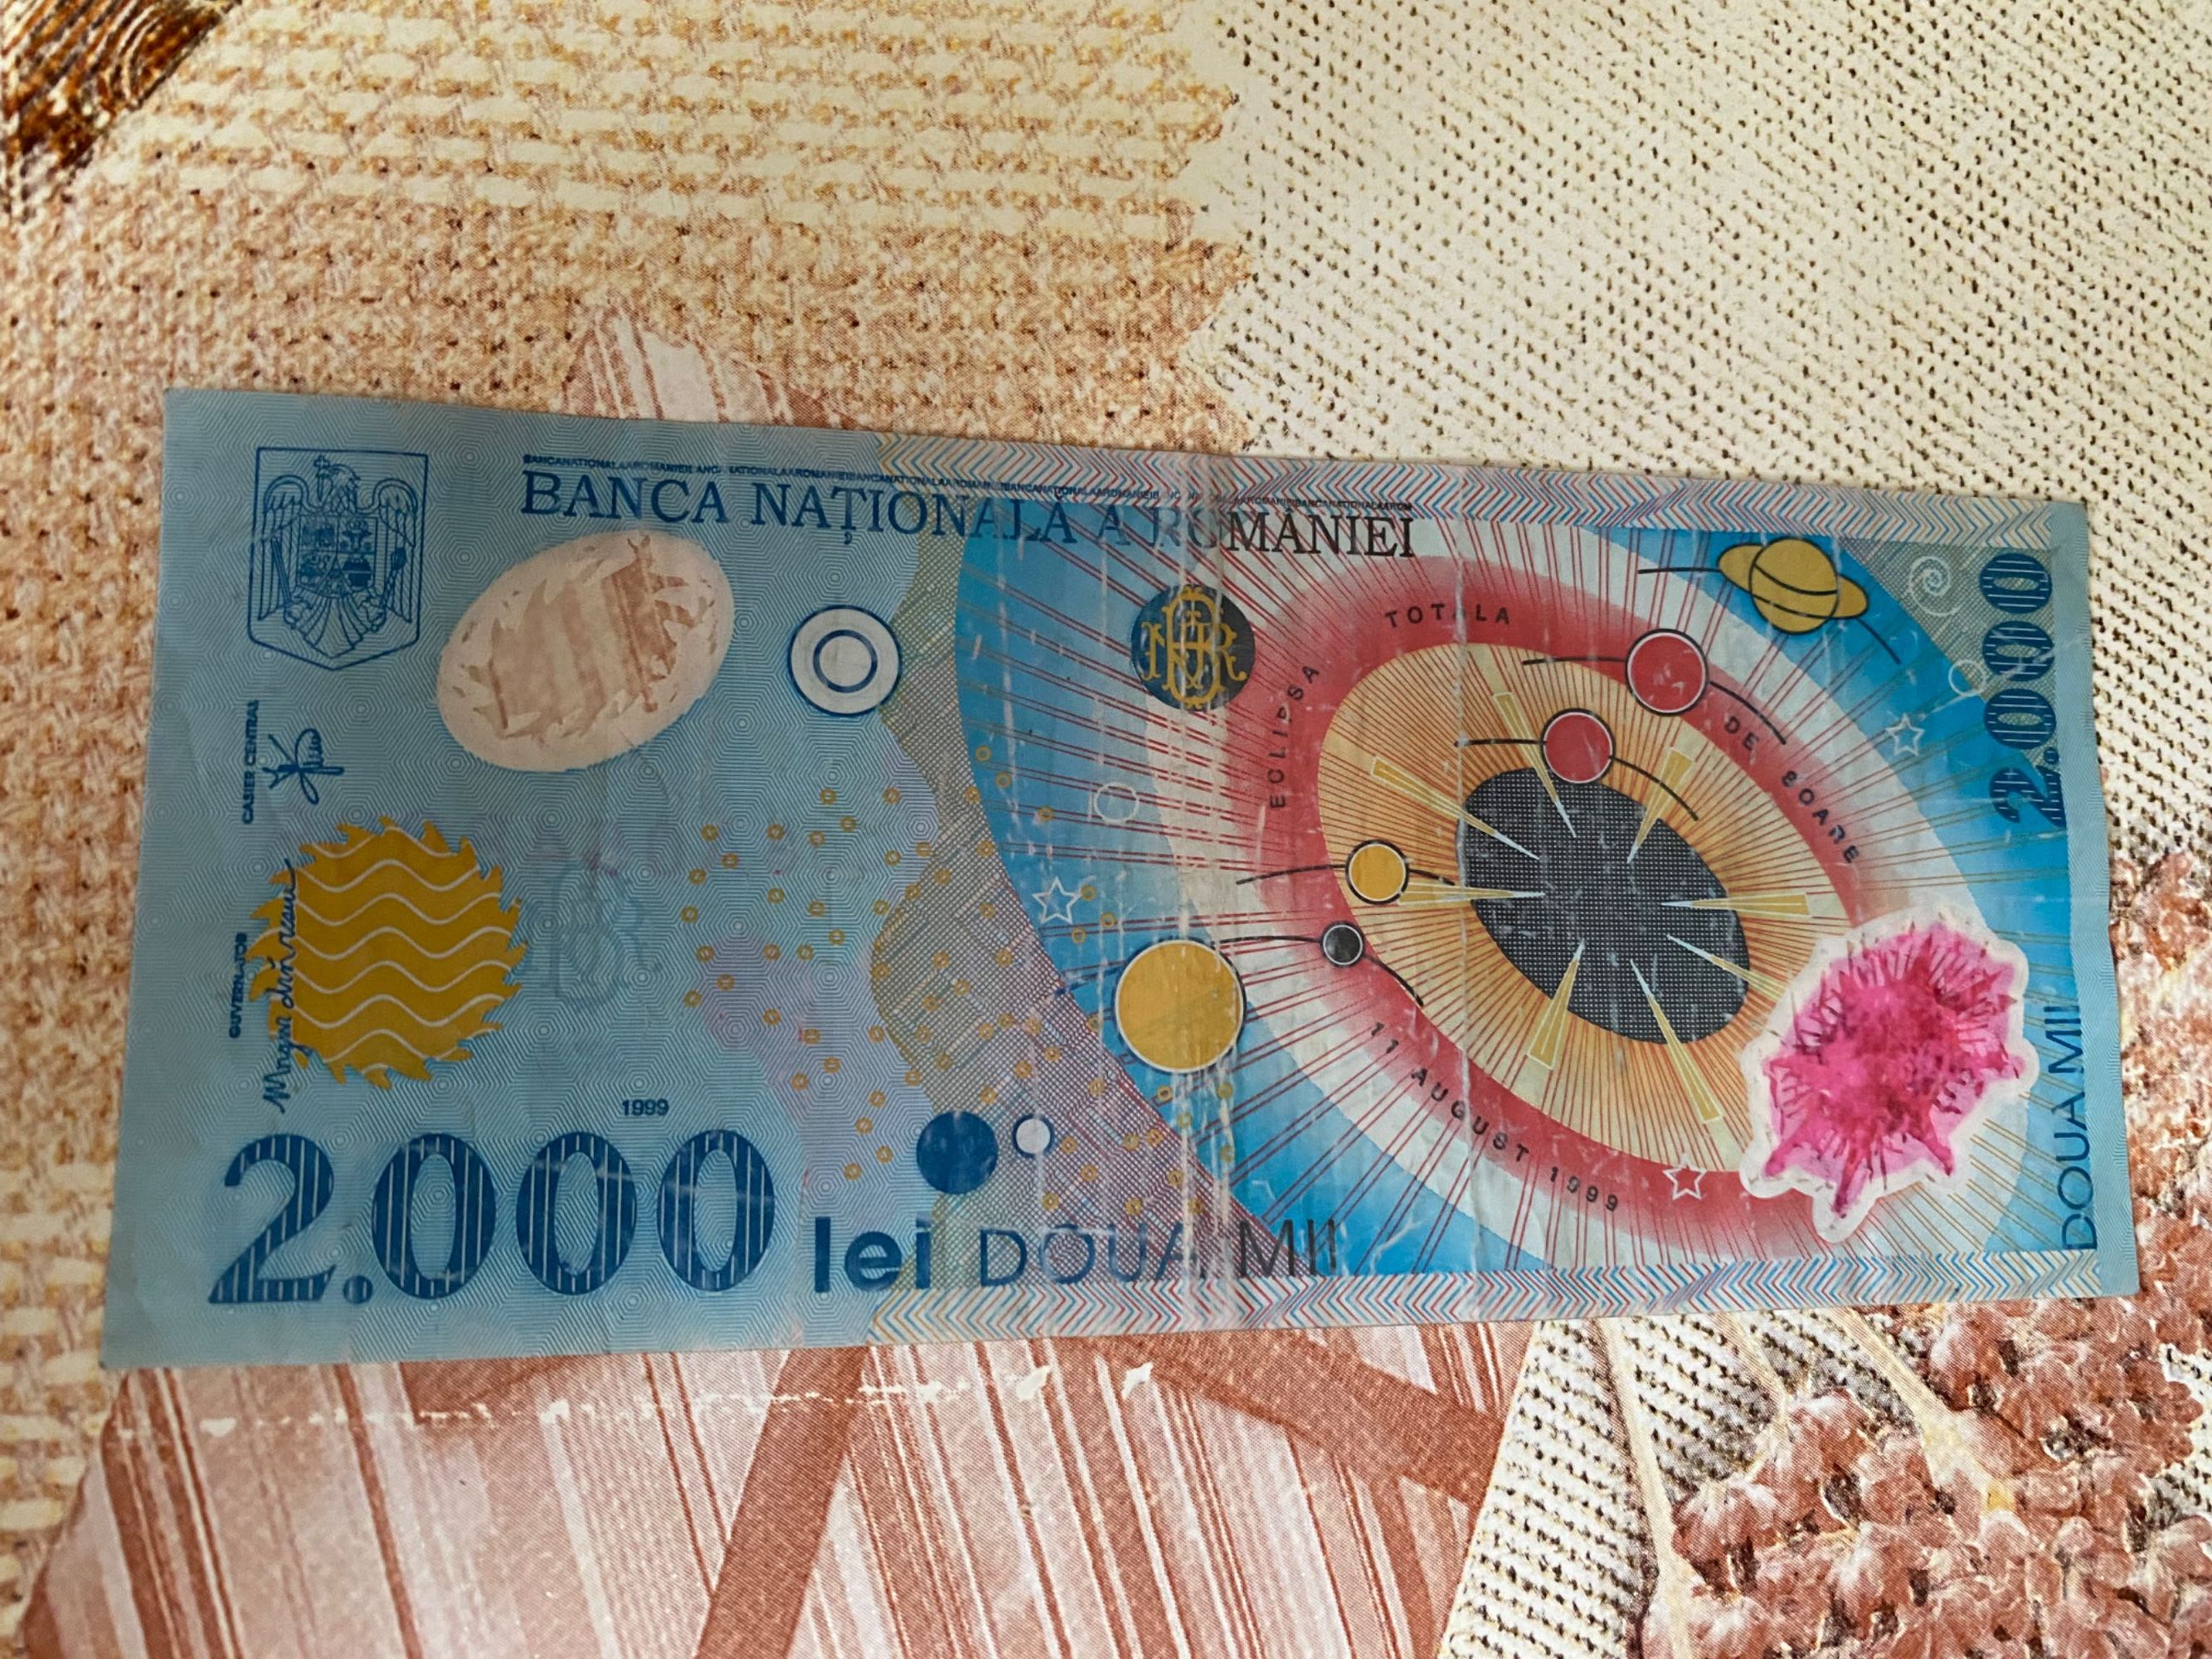 Bancnota 2000 lei (eclipsa) & monede 500 lei (an 1999)